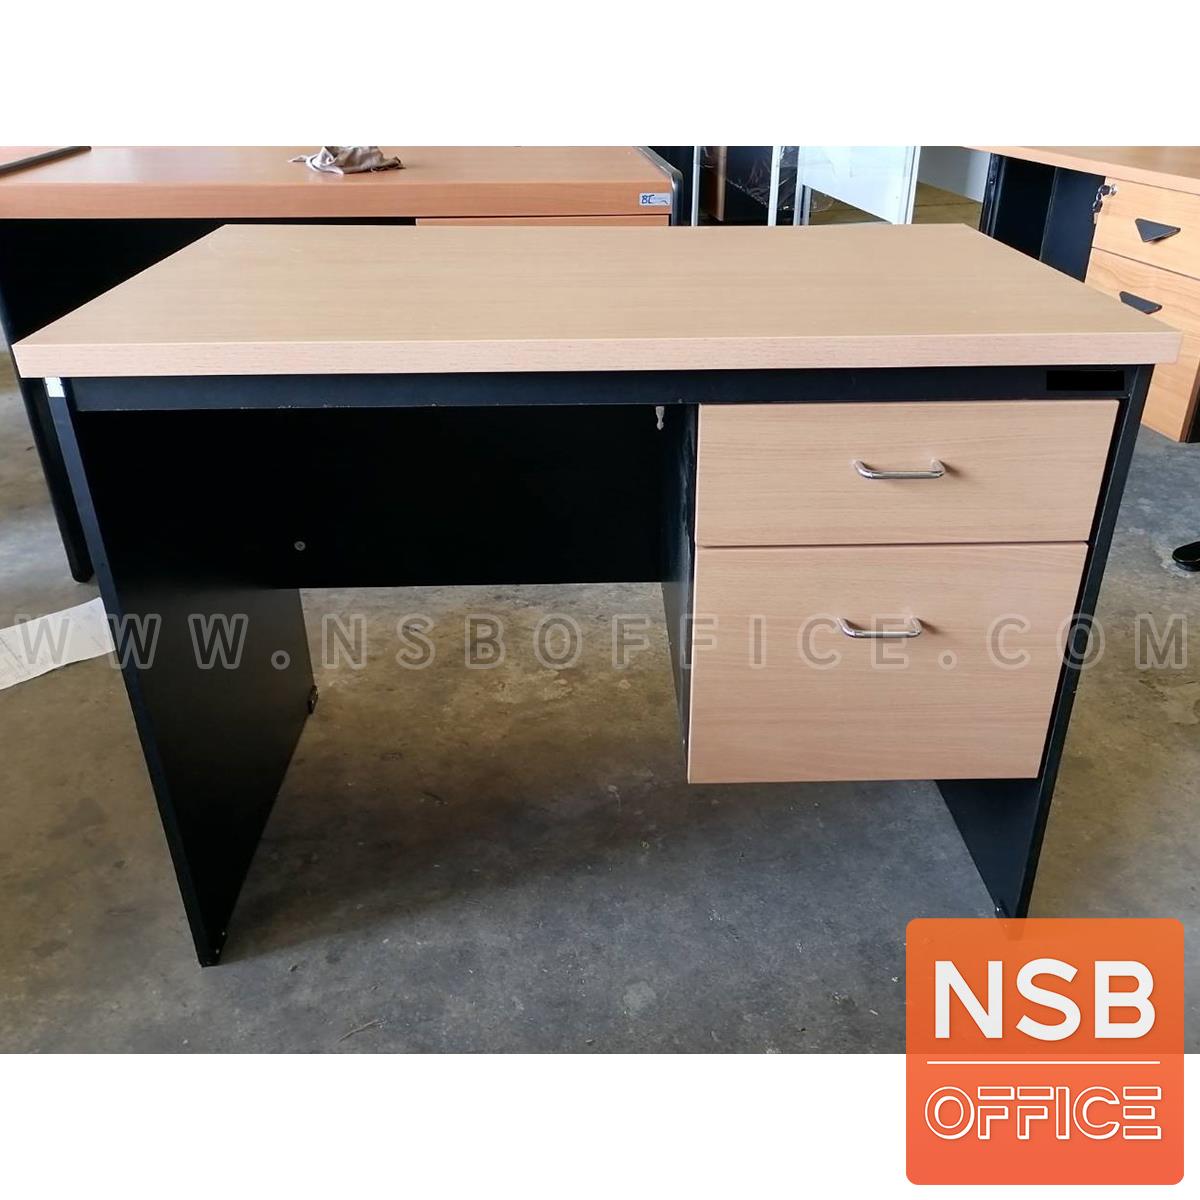 โต๊ะทำงานไม้ PVC 2 ลิ้นชัก รุ่น Pinery (ไพน์เนอรี่) ขนาด 100W*60D cm. 